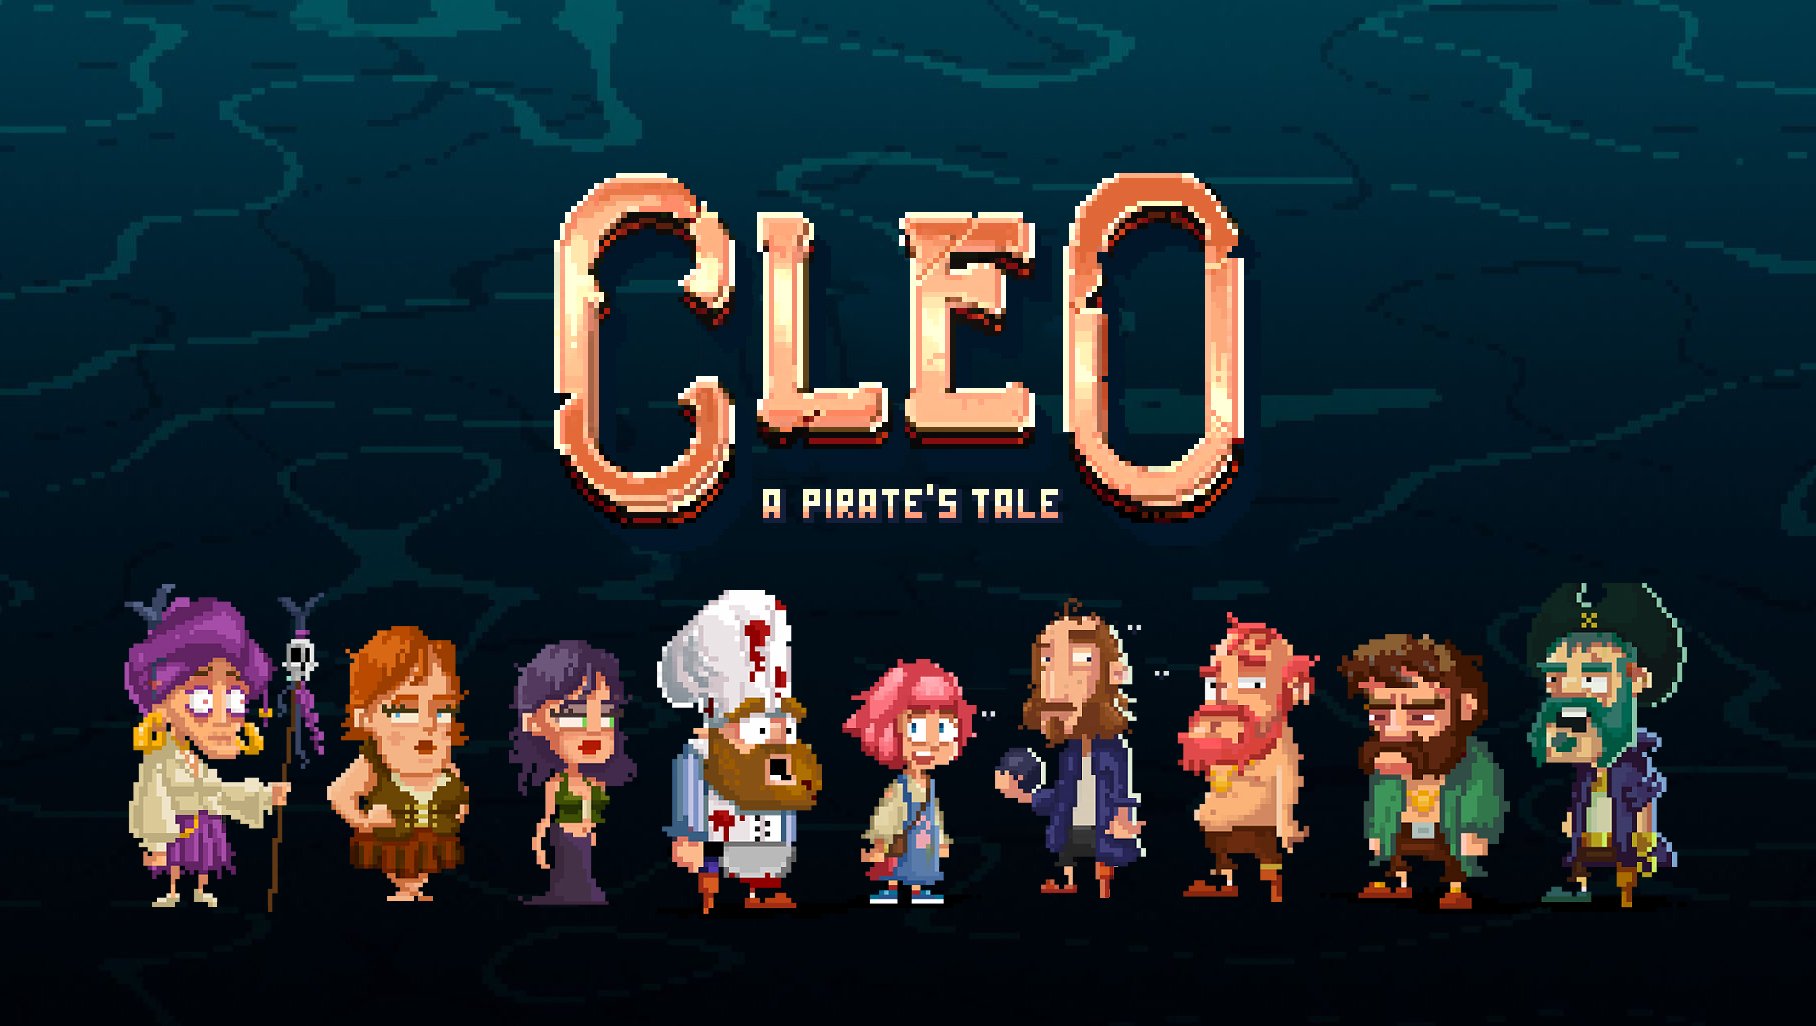 Cleo: A Pirate’s Tale